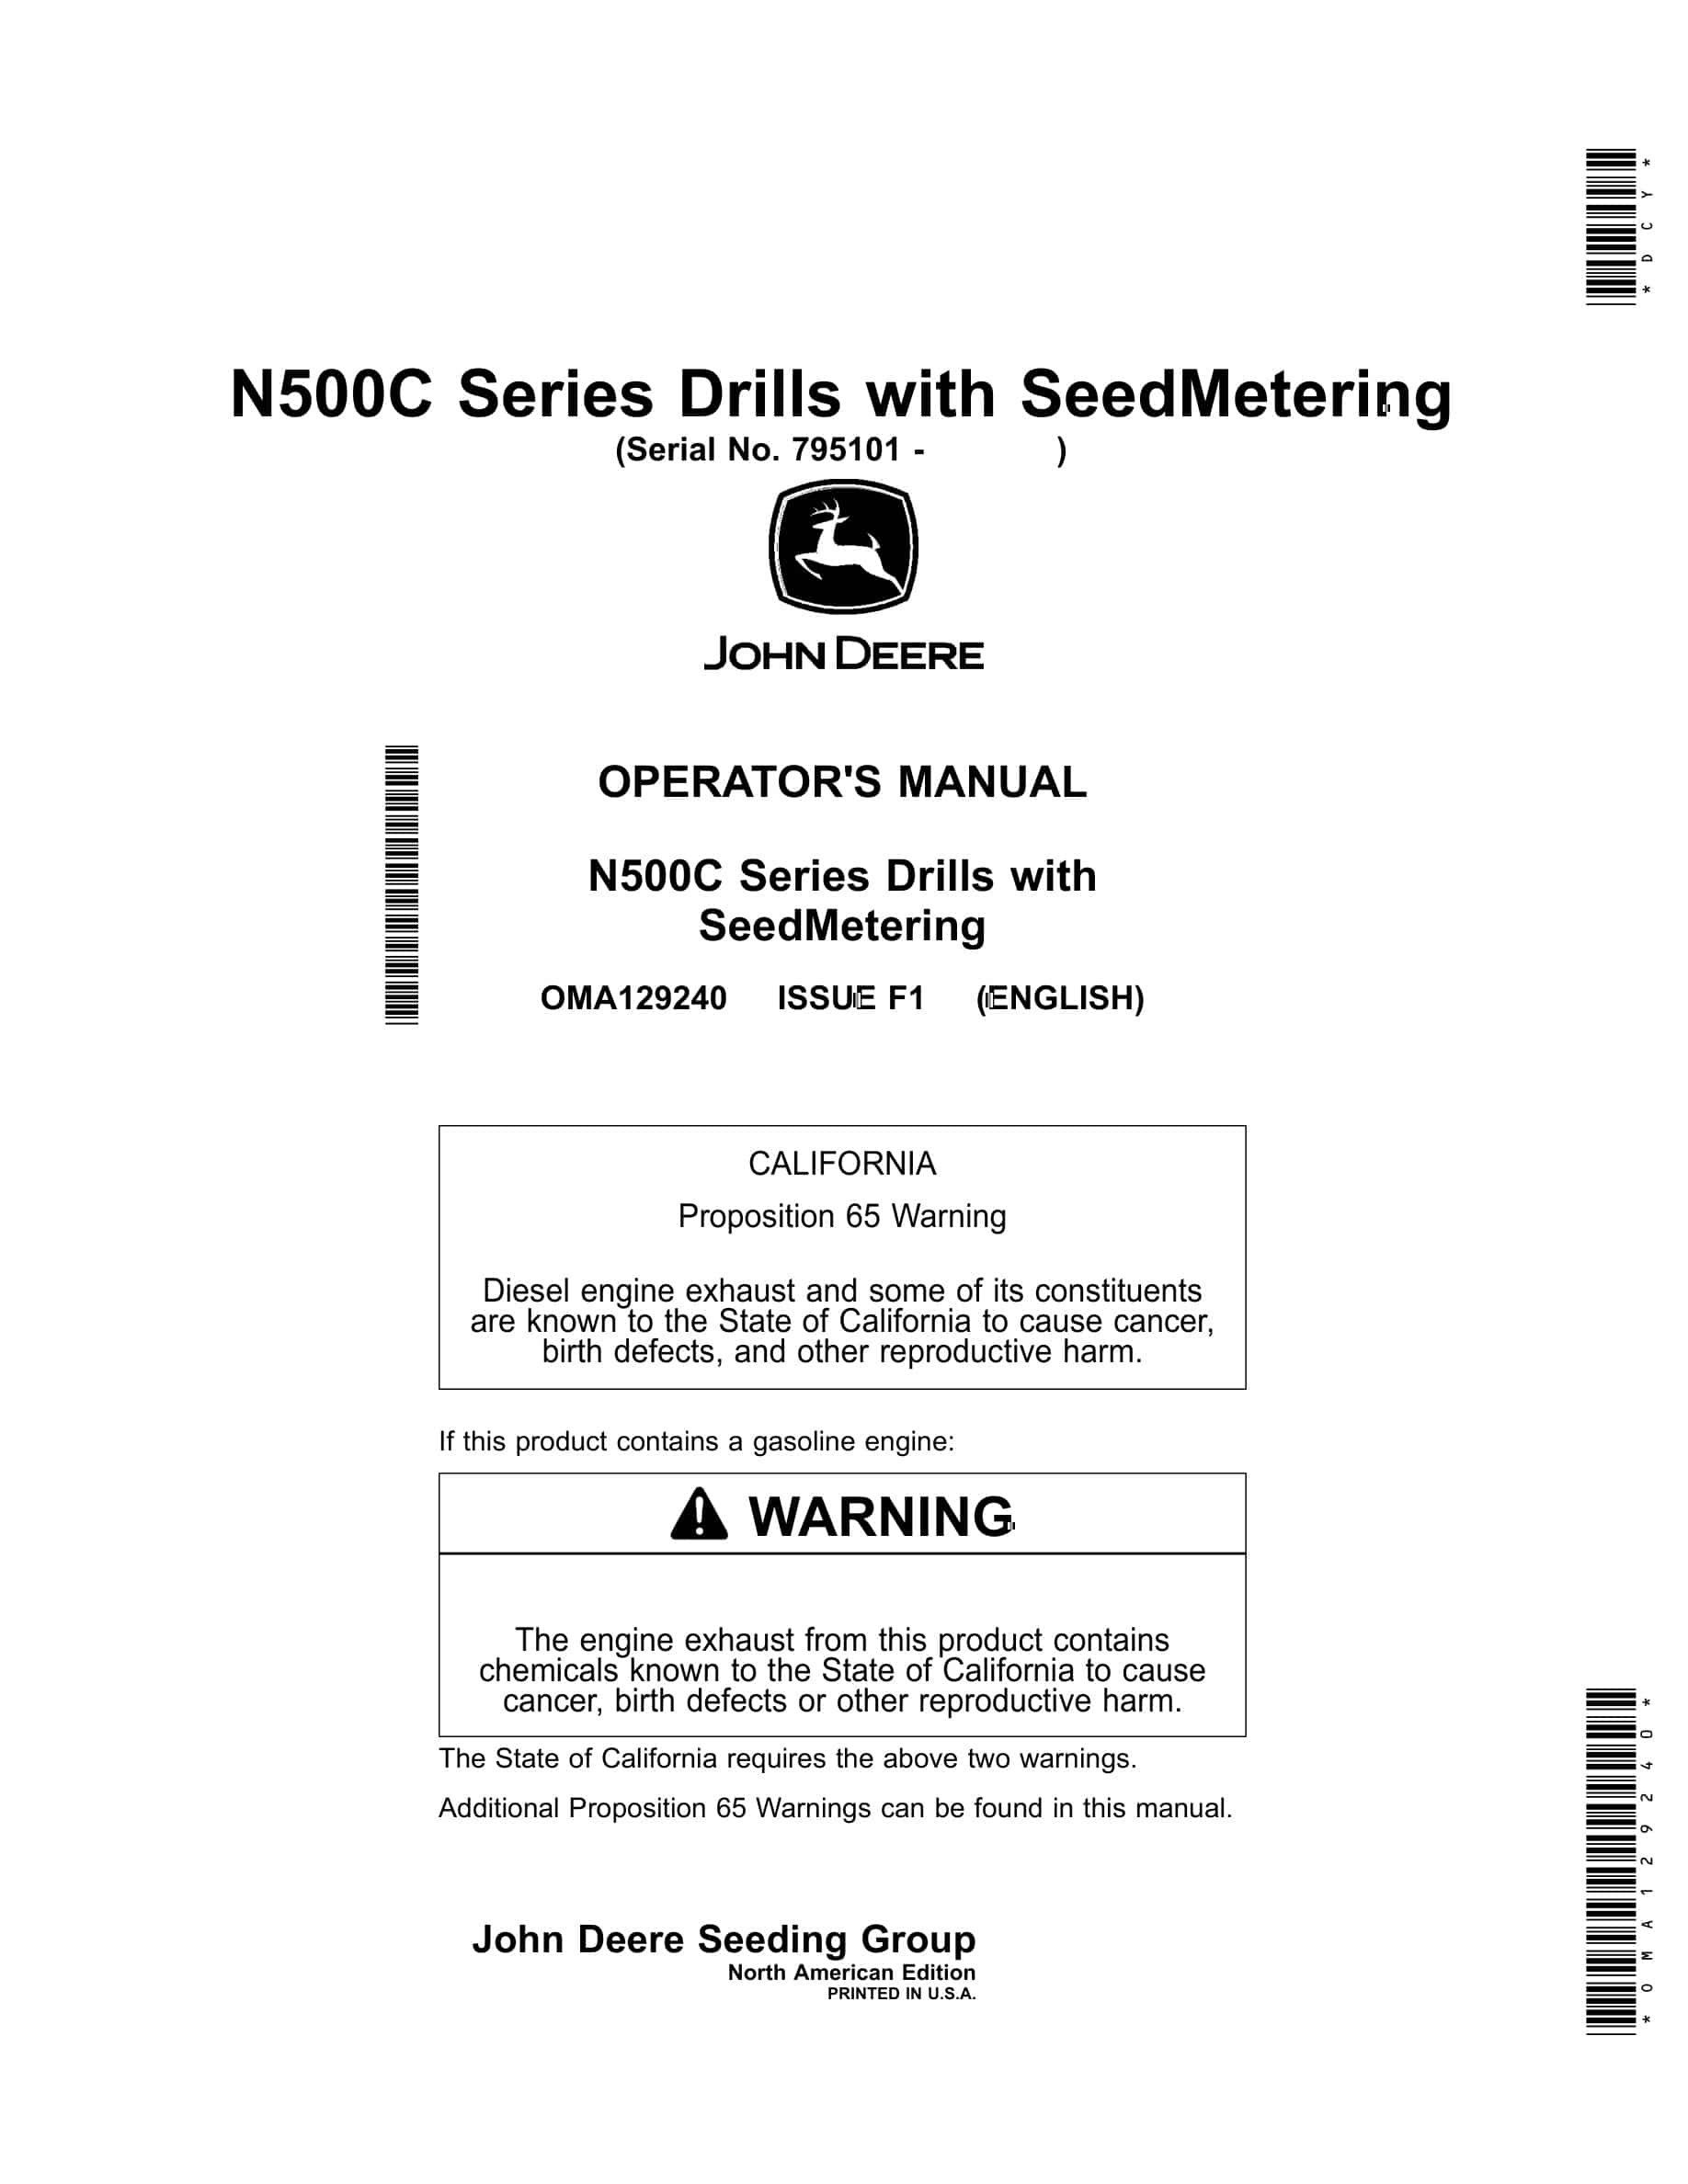 John Deere N500C Series Drill with SeedMetering Operator Manual OMA129240-1